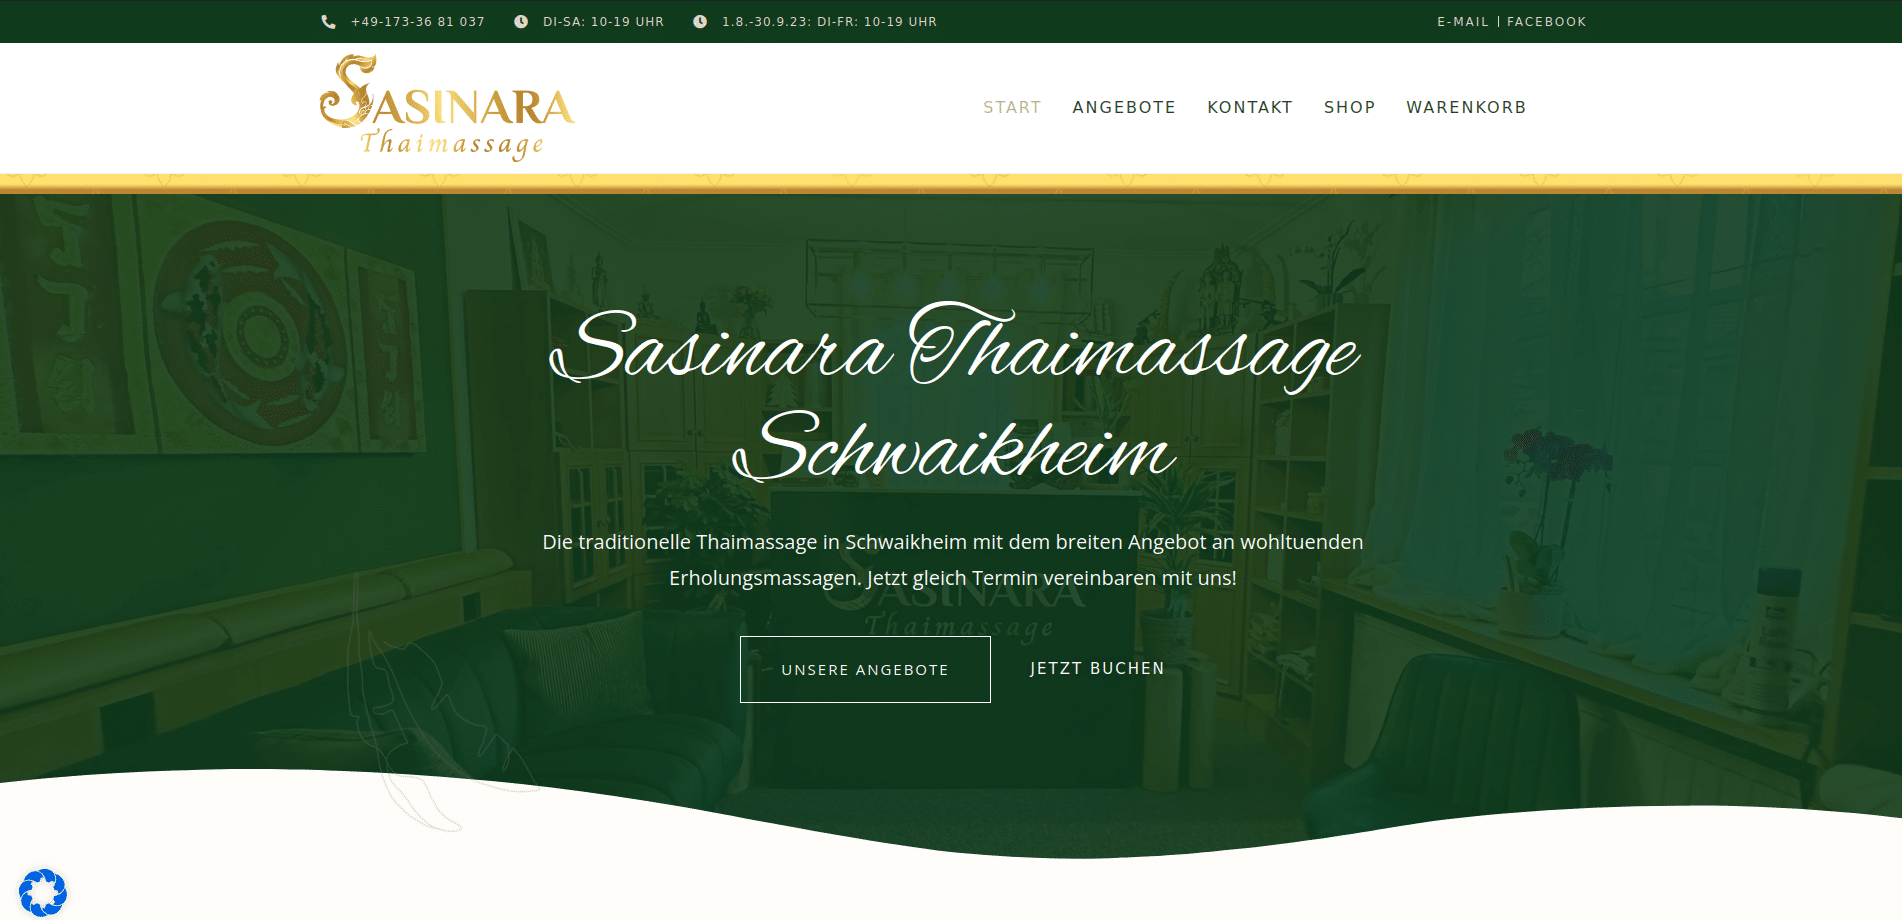 Sasinara Thaimassage Schwaikheim Startseite